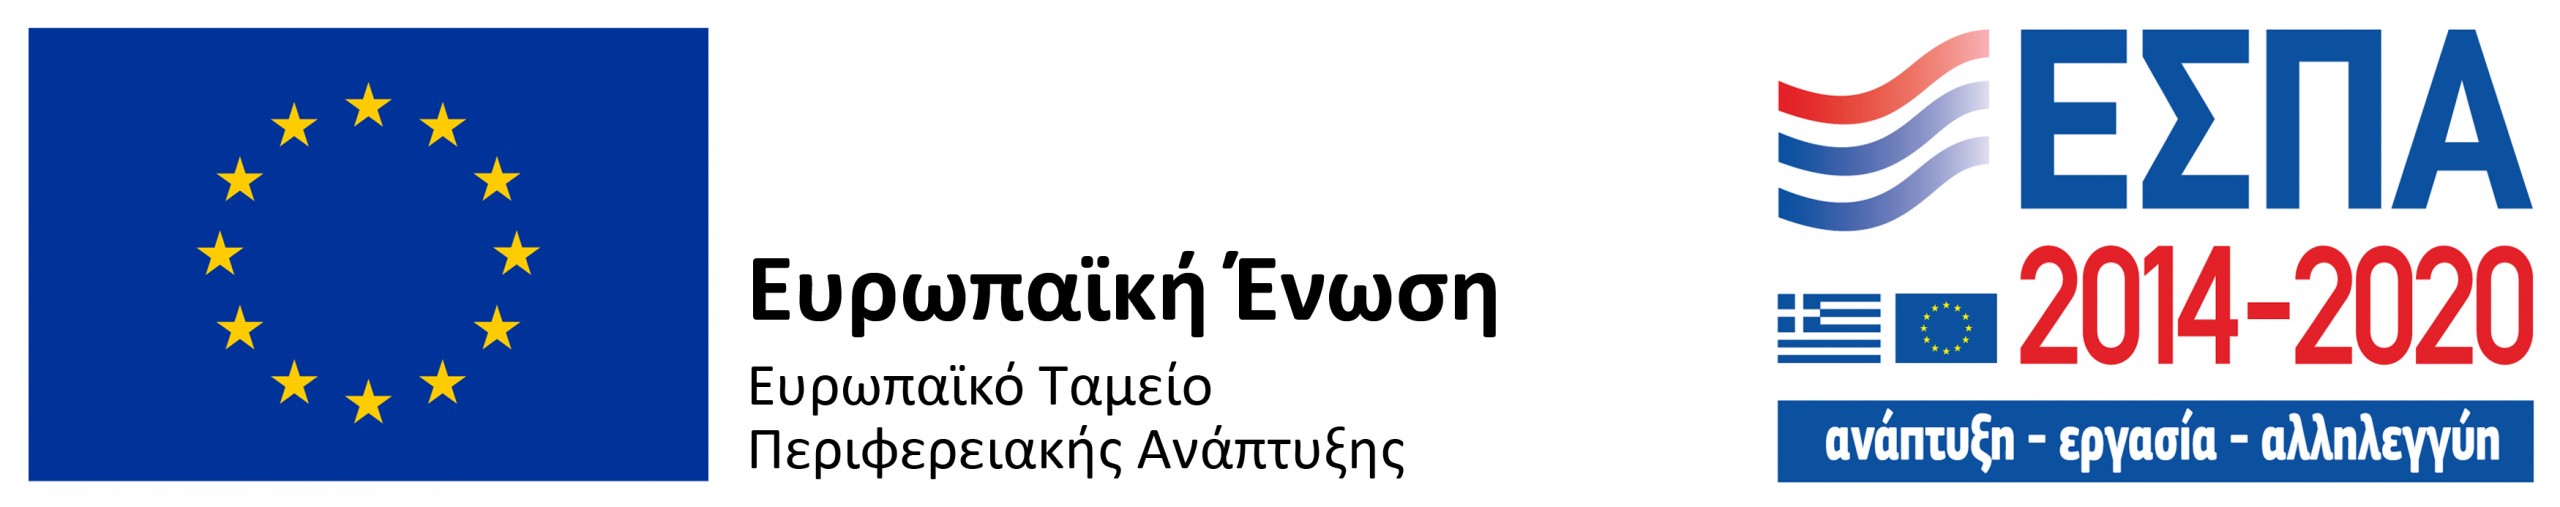 logo _greek